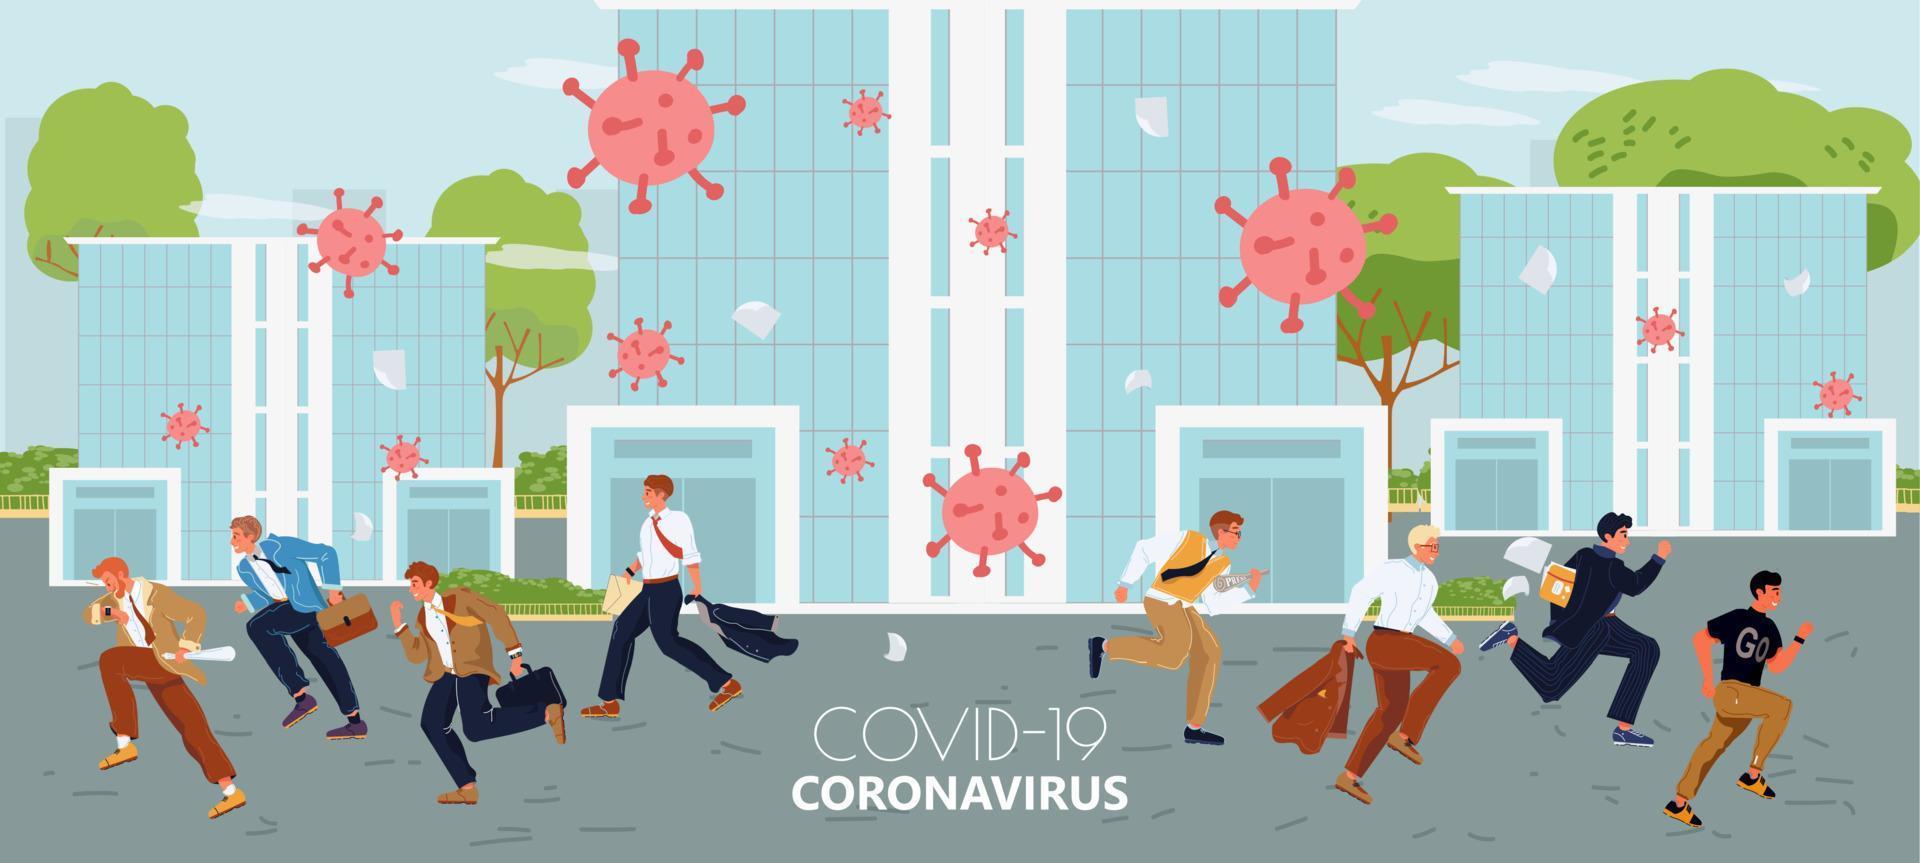 stagione influenza, coronavirus influenza pandemia concetto vettore